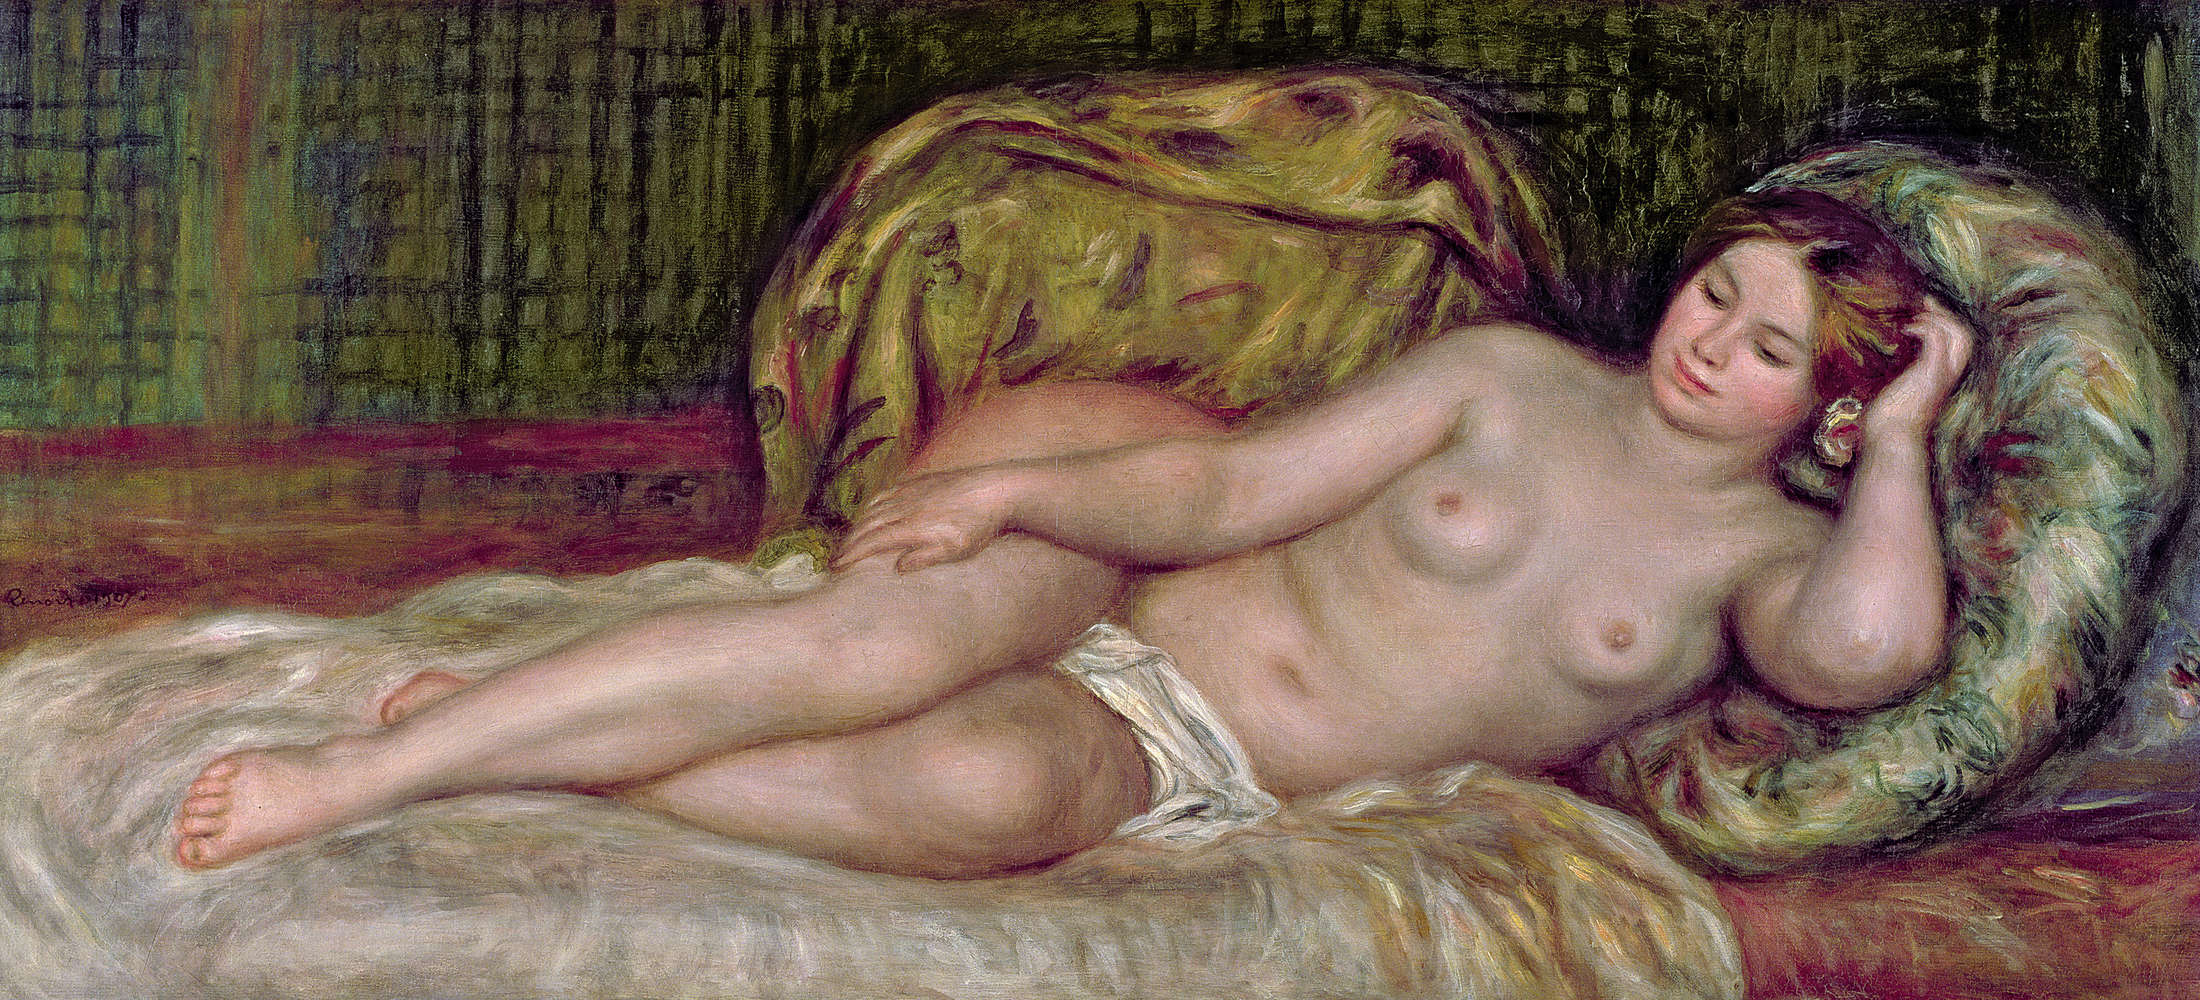             Fotomurali "Nudo" di Pierre Auguste Renoir
        